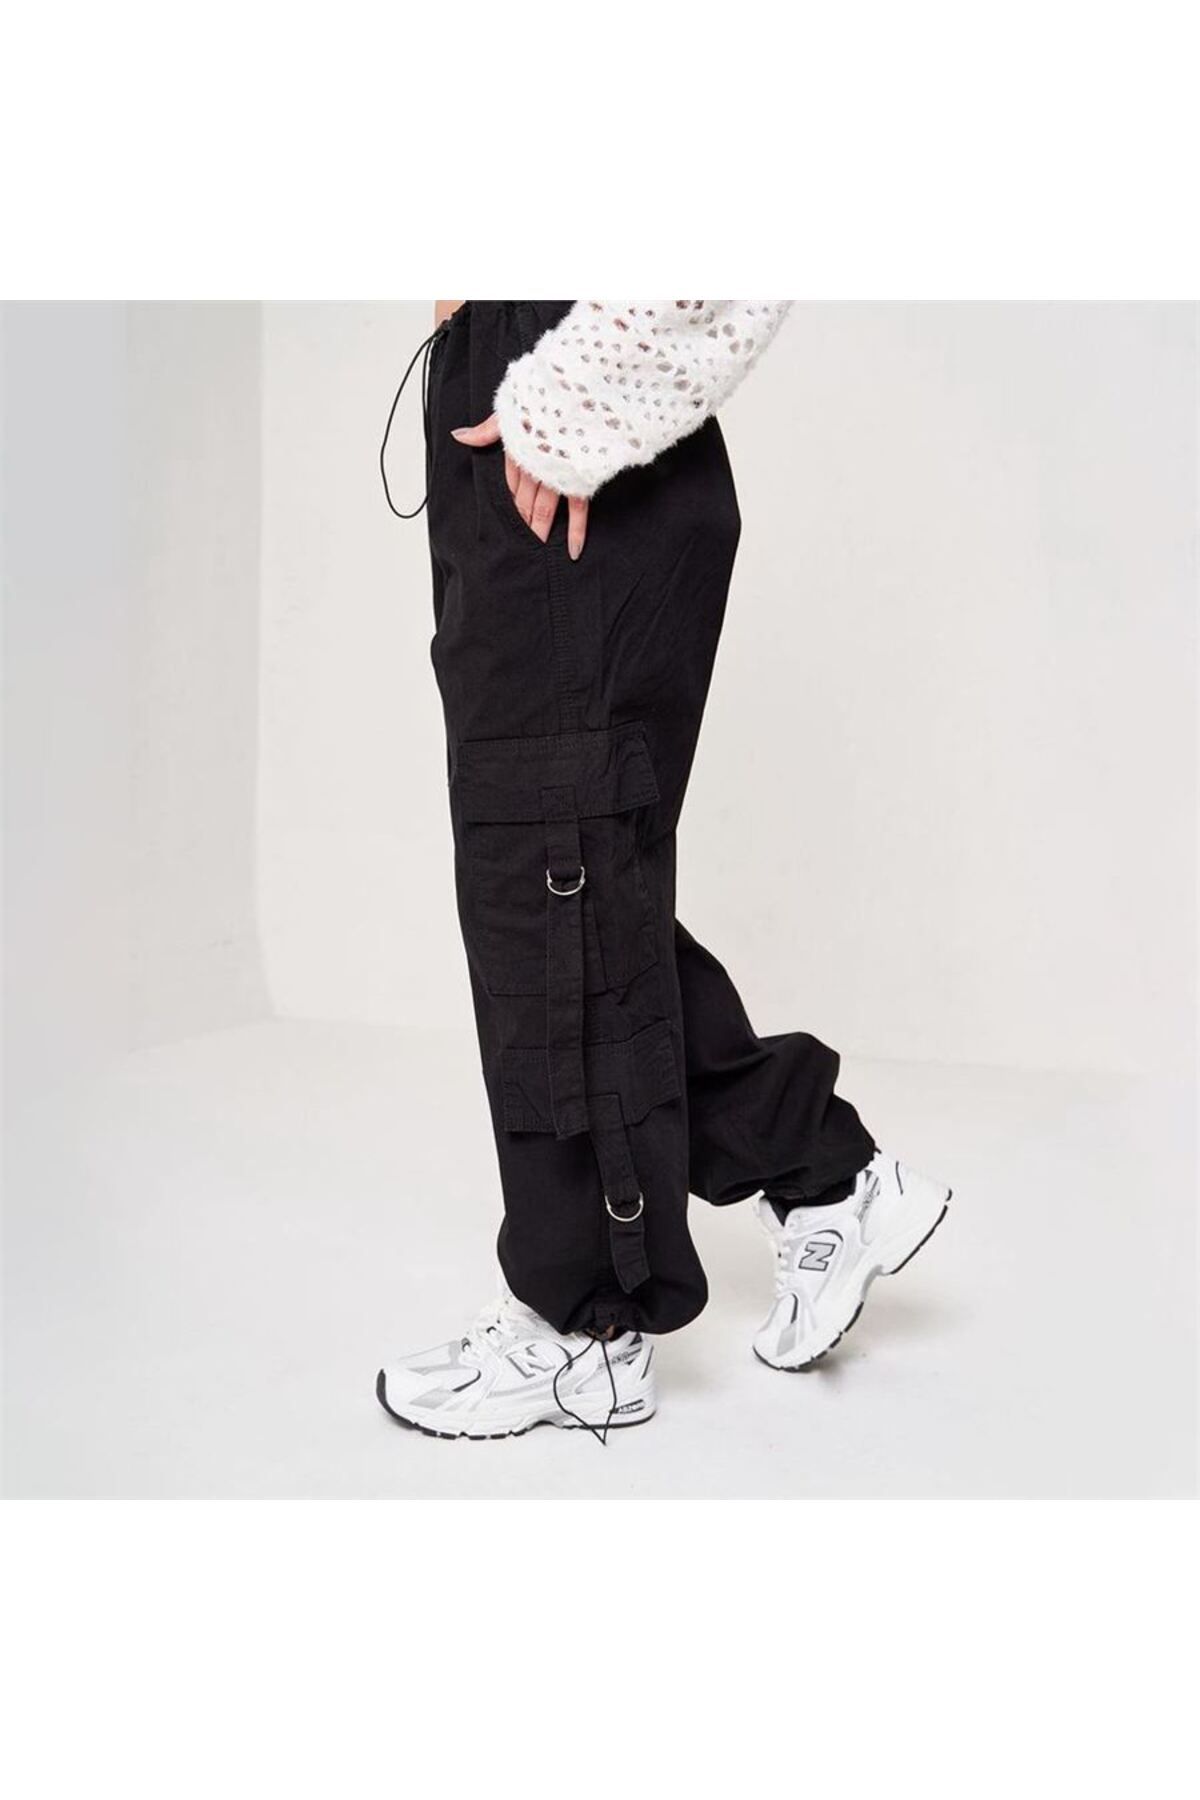 CHEAP Black Corduroy Pants Size 30W x 32L (fits... - Depop